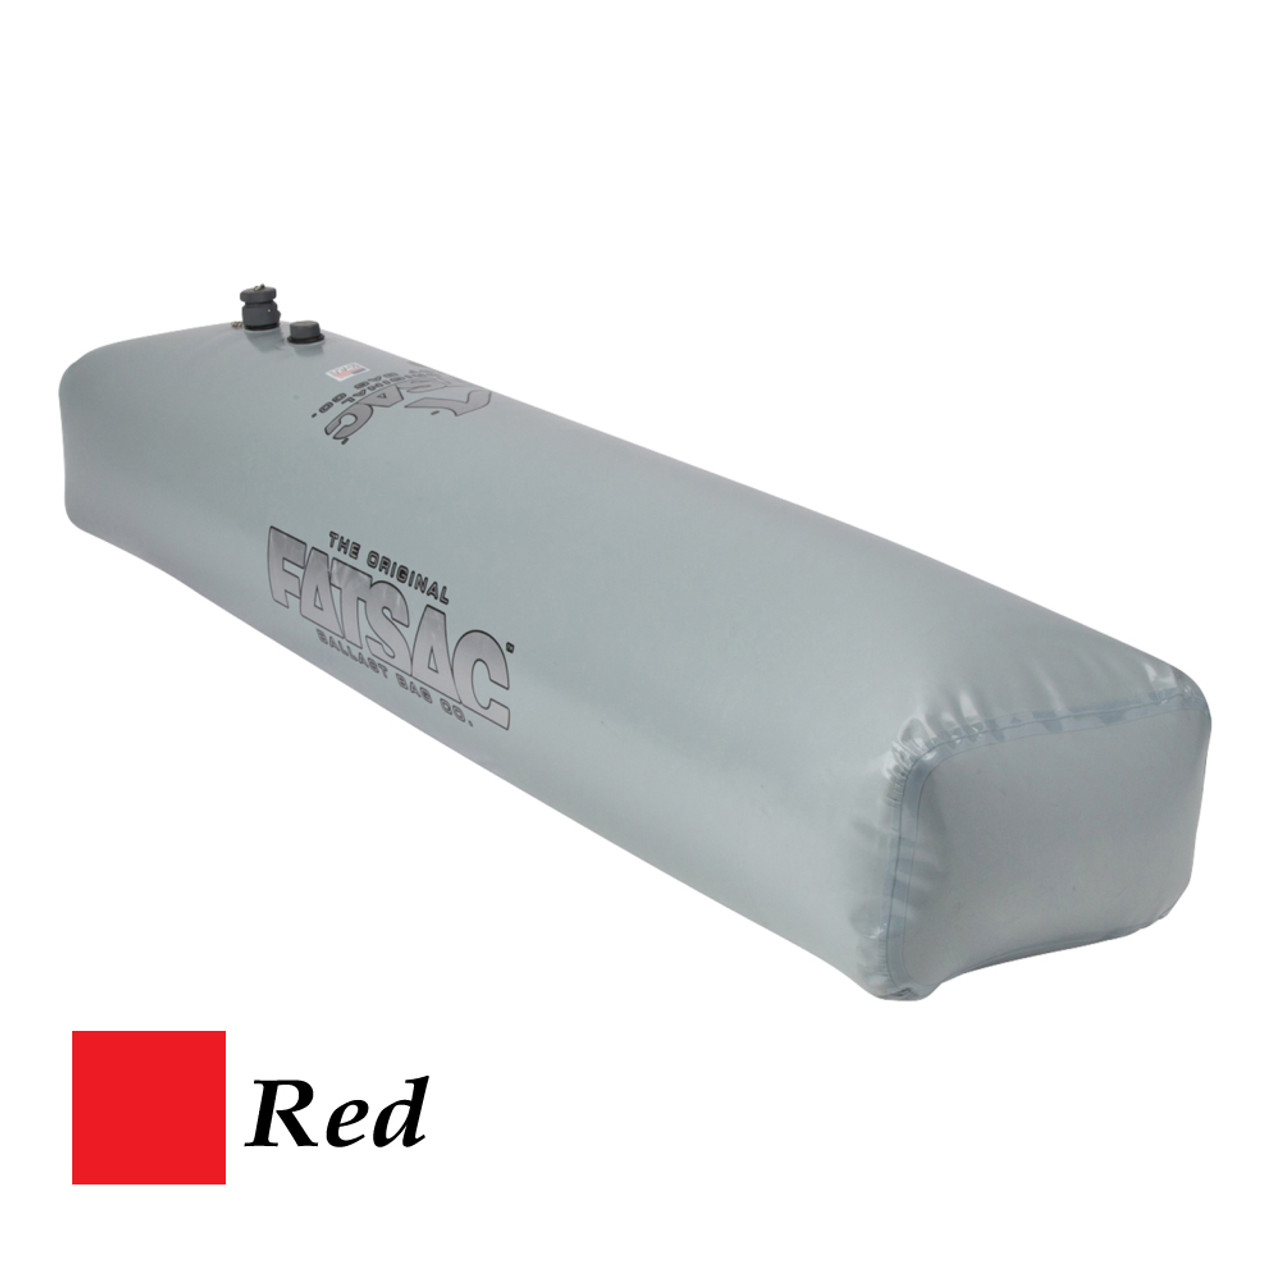 FATSAC Tube Fat Sac Ballast Bag - 370lbs - Red [W704-RED]